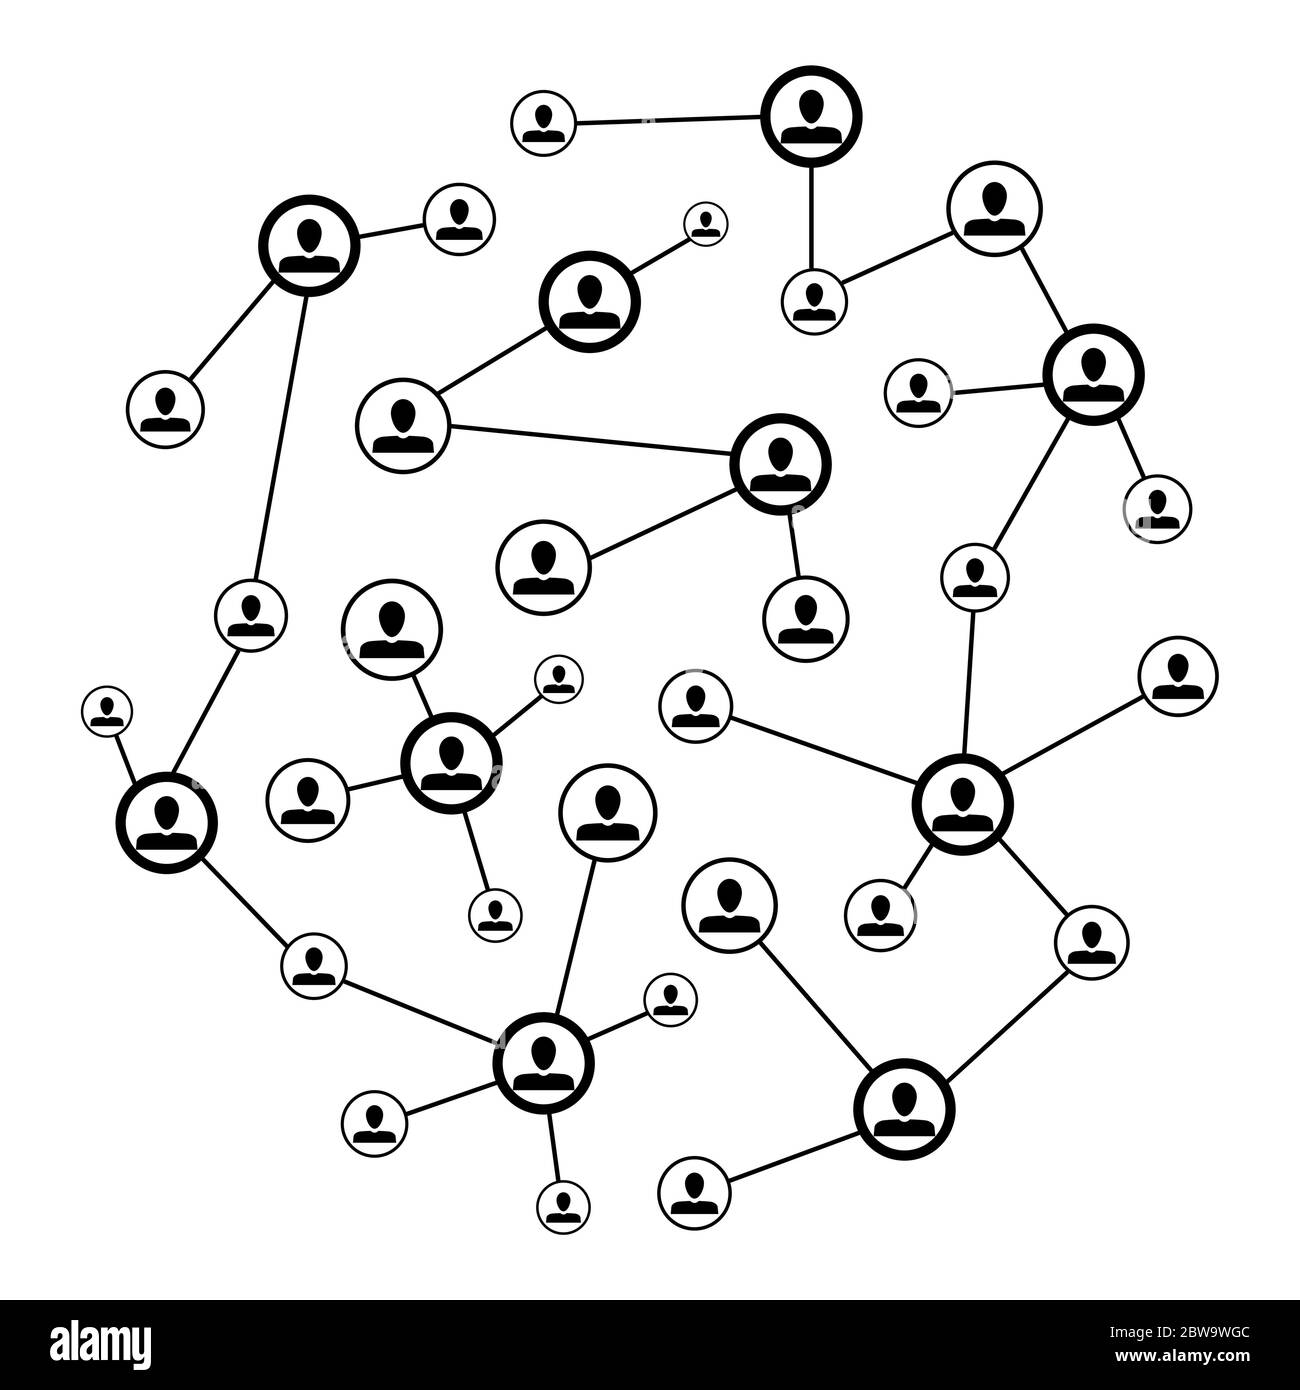 Soziale Netzwerke verbinden. Vector Connection Netzwerk Internet, Social Global net, Web-Gesellschaft mit Benutzer-Avatar, Sozialisierung und Kommunikation illustrat Stock Vektor